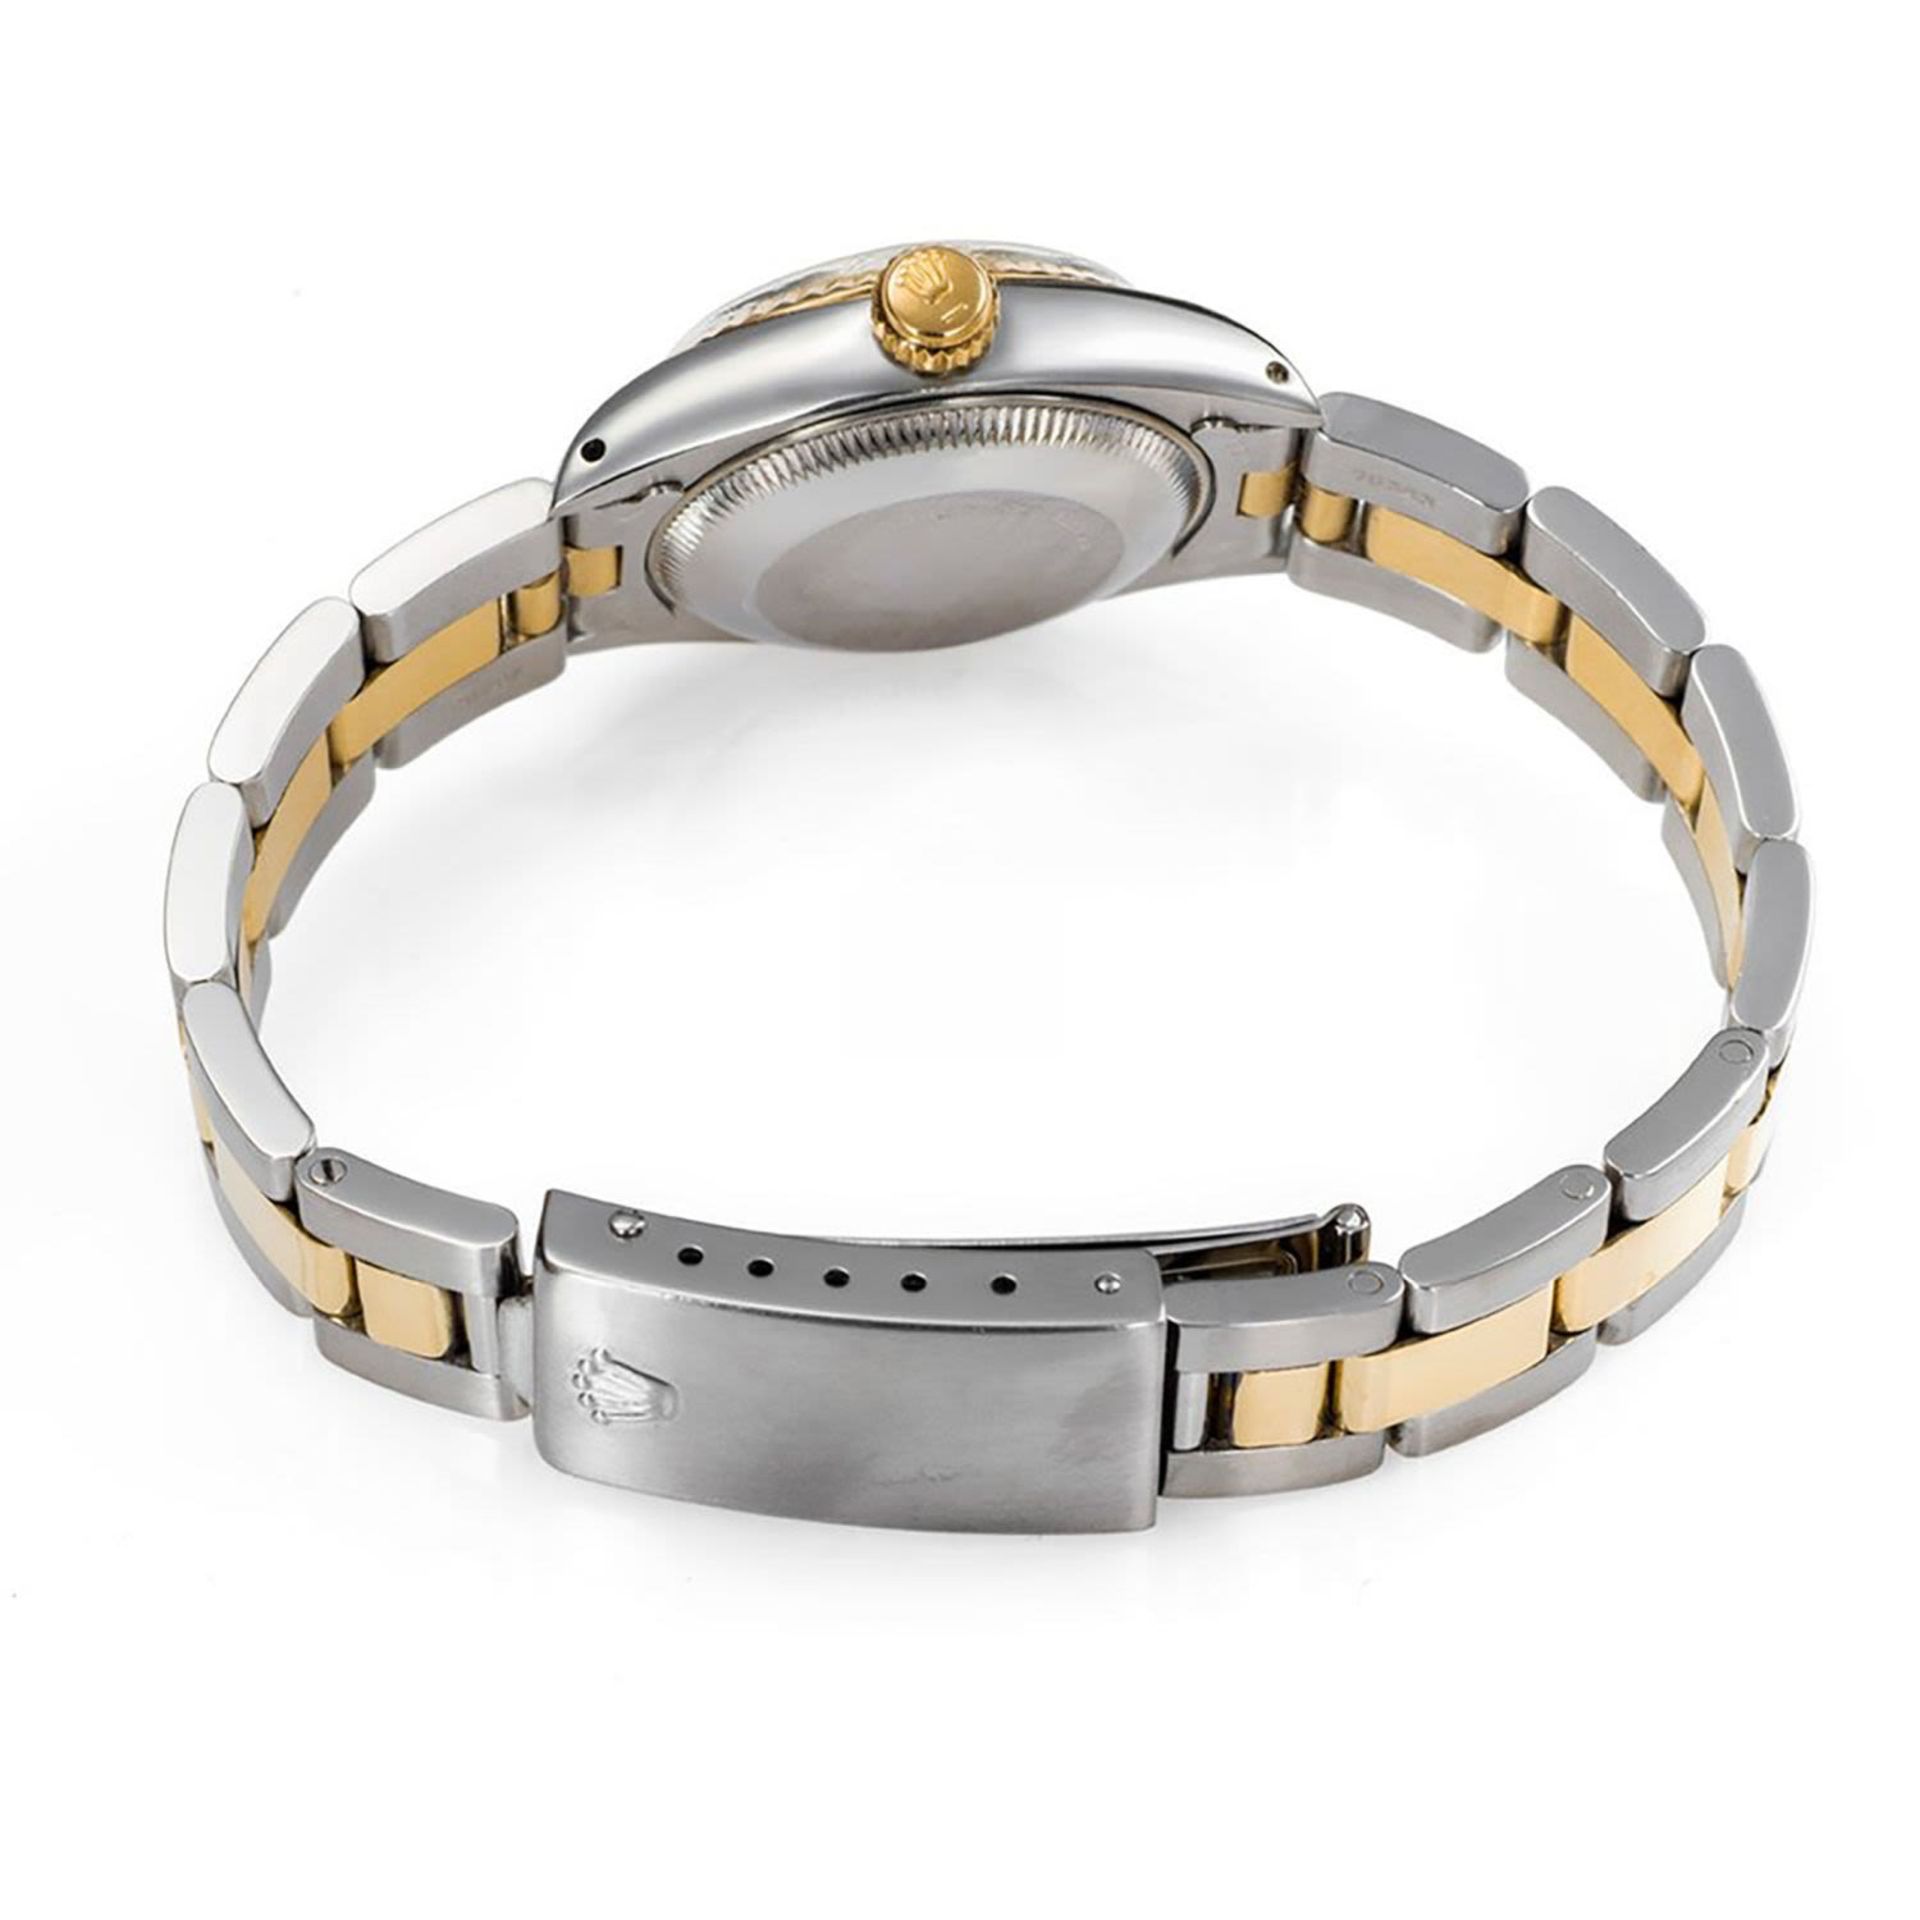 Rolex Lady Datejust wristwatch, in gold and steel, year 1981 - Bild 3 aus 5